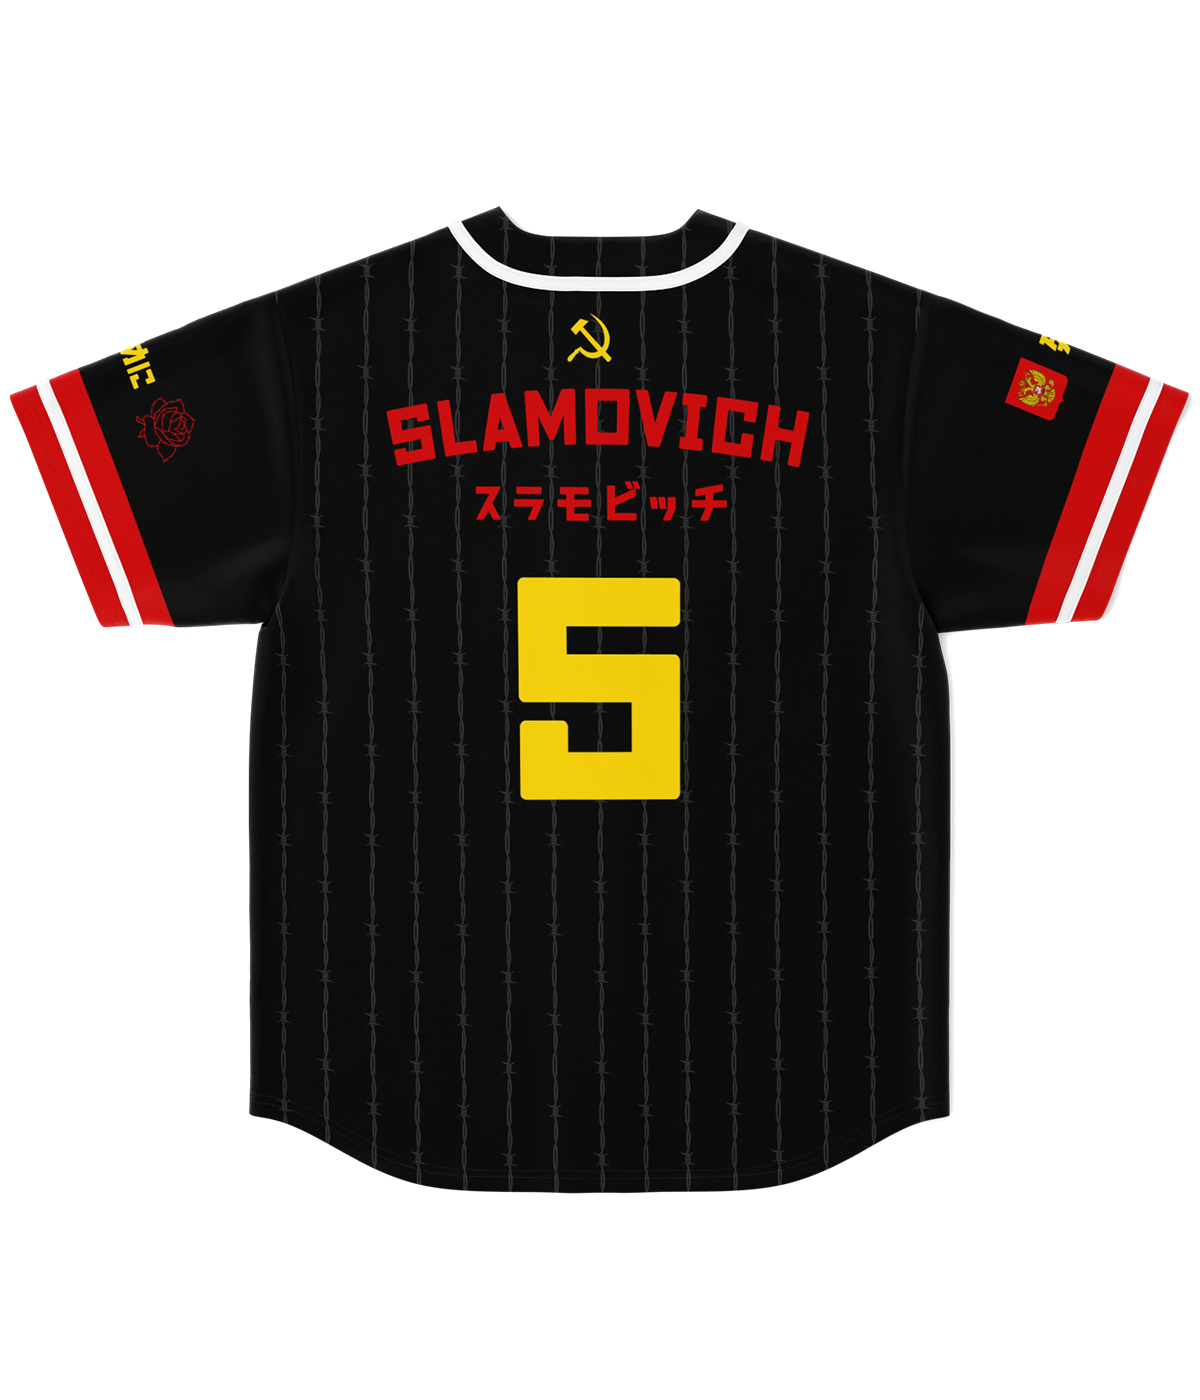 Masha Slamovich - Baseball Jersey